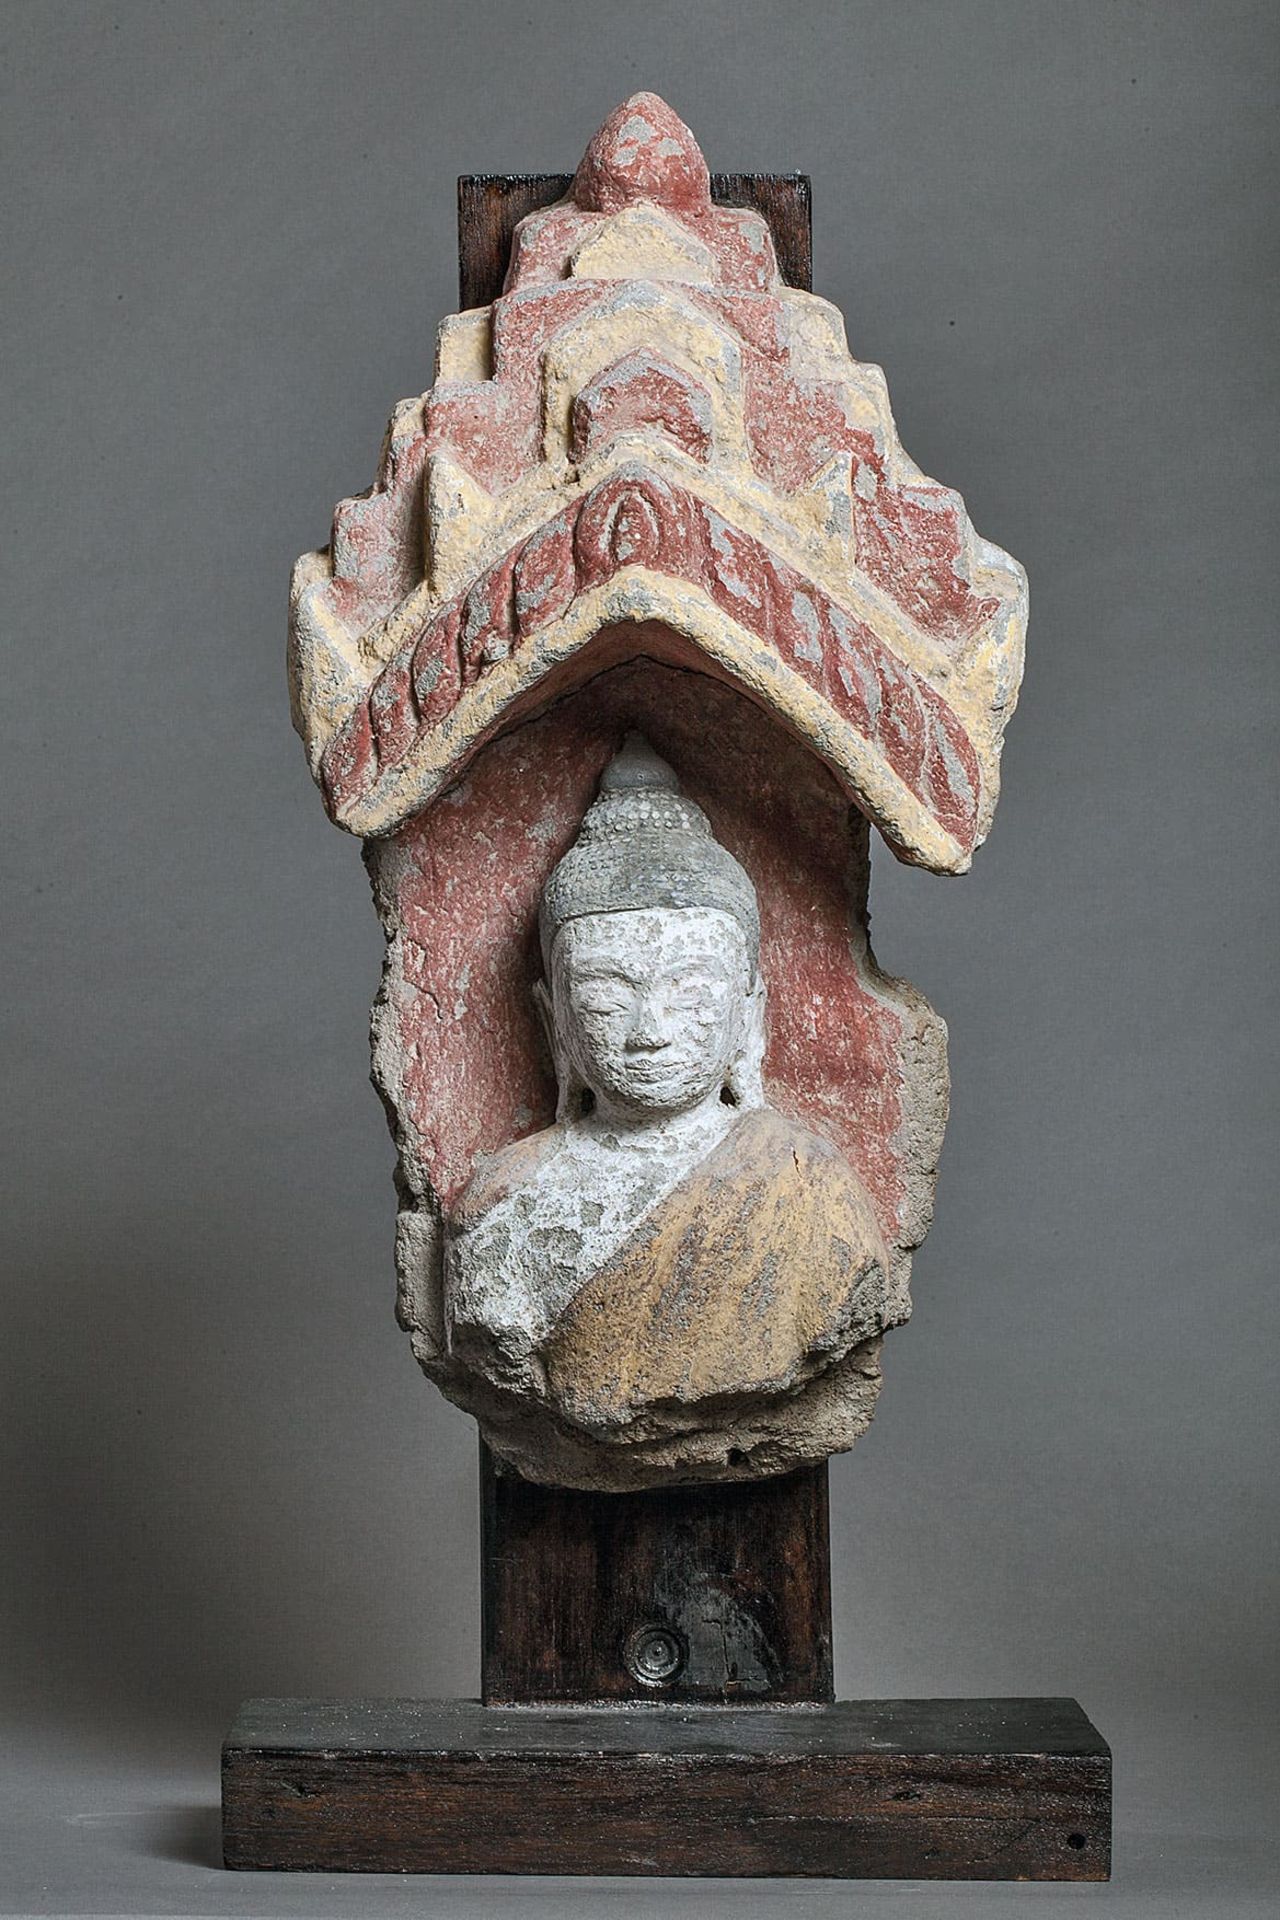 Buste de Buddha vêtu d'une robe monastique et coiffé de la protubérance crânienne ushnisha figuré